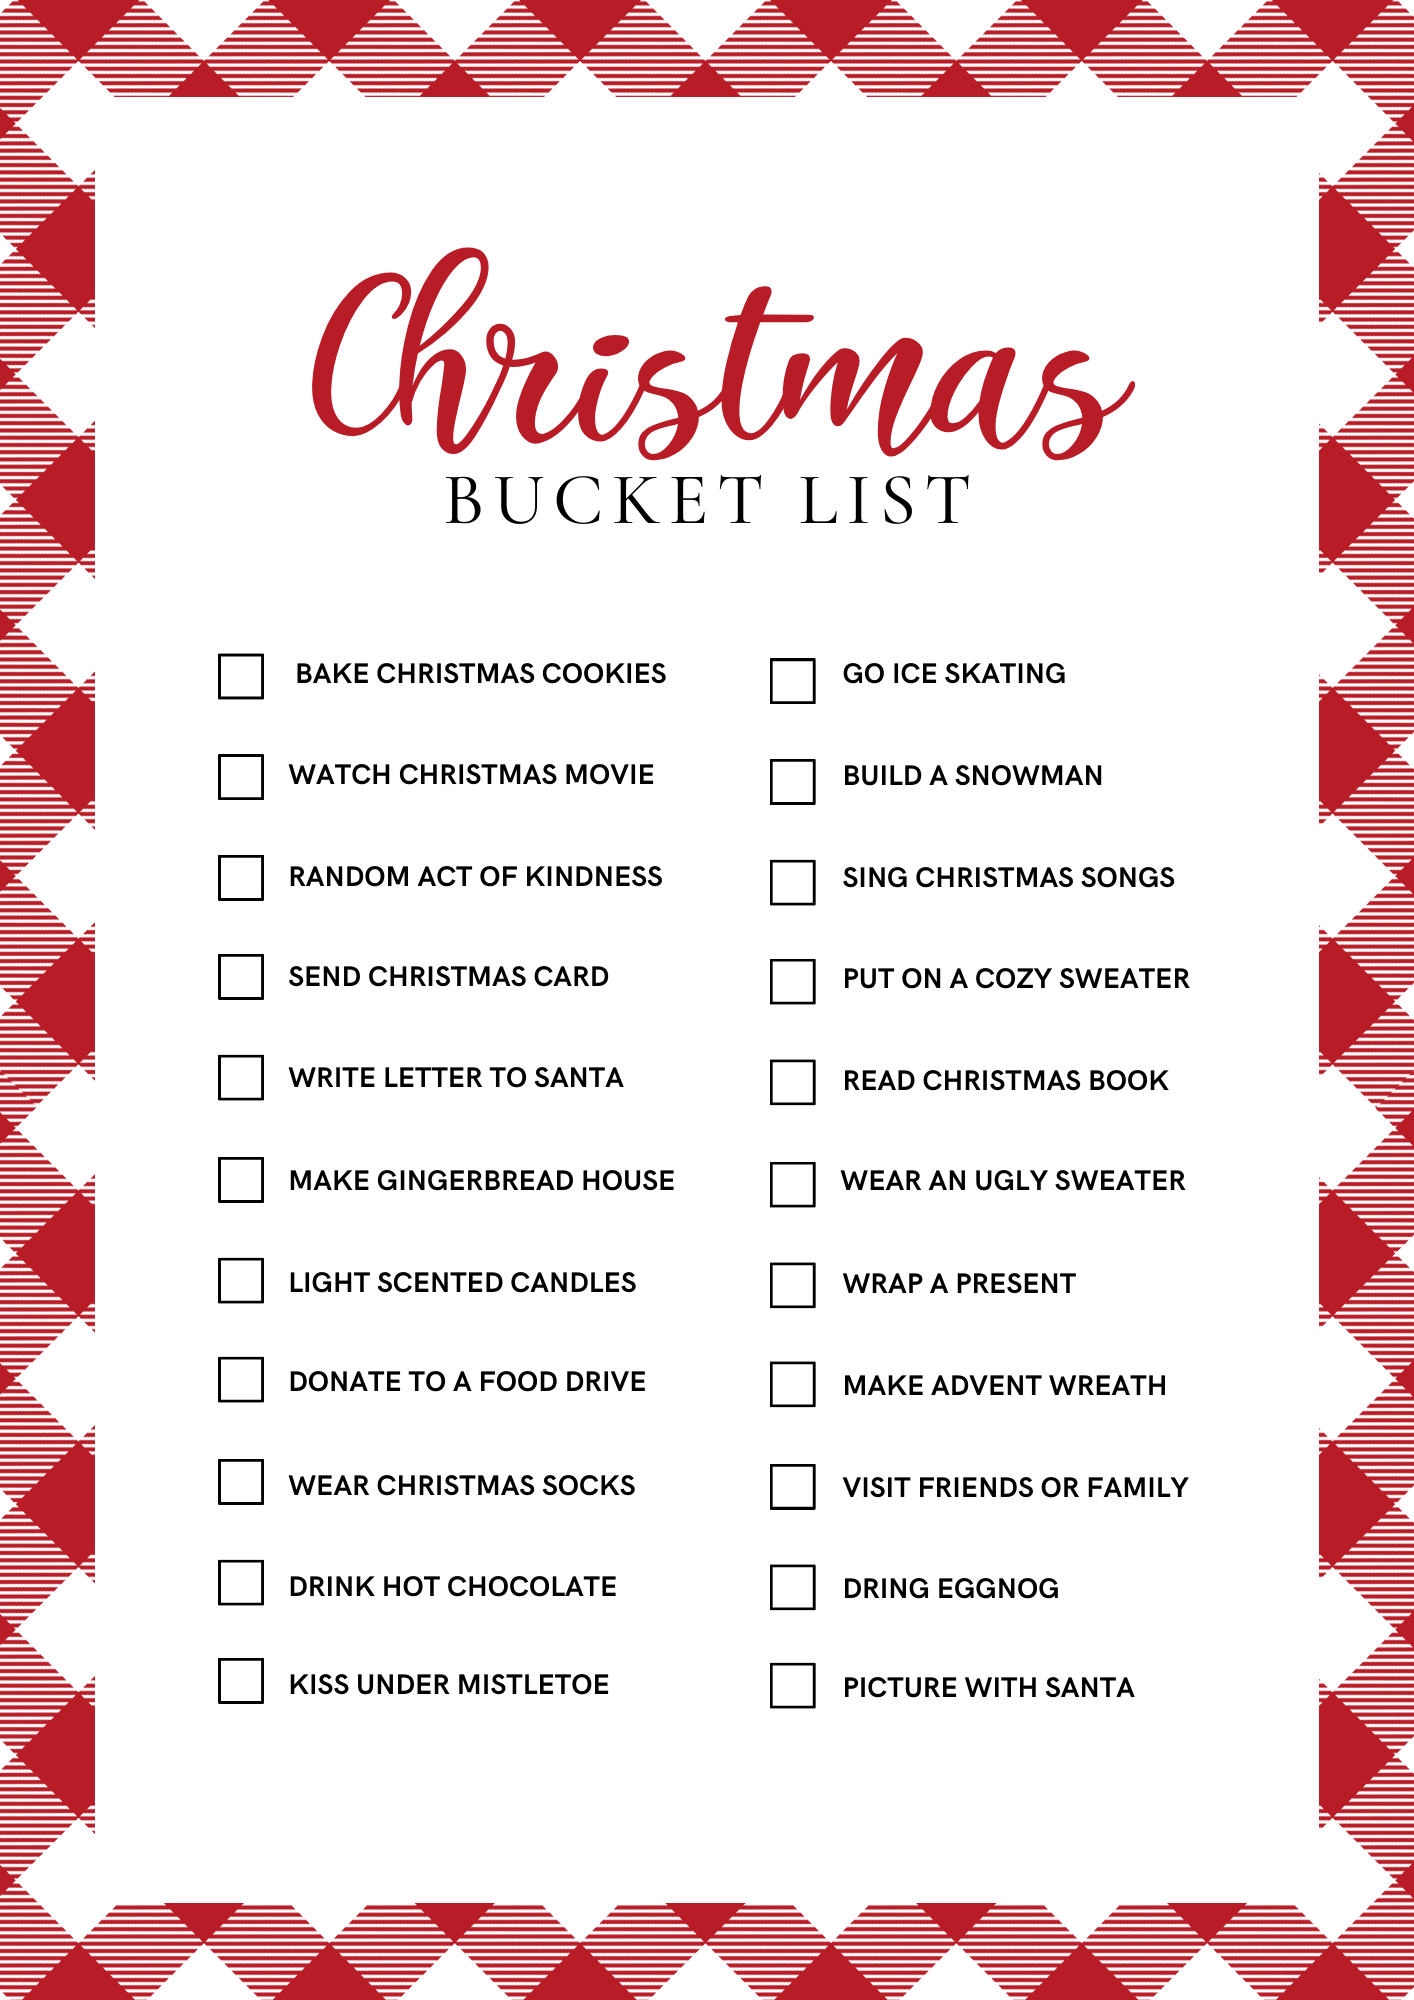 Free Printable Christmas Bucket List with Christmas Activities